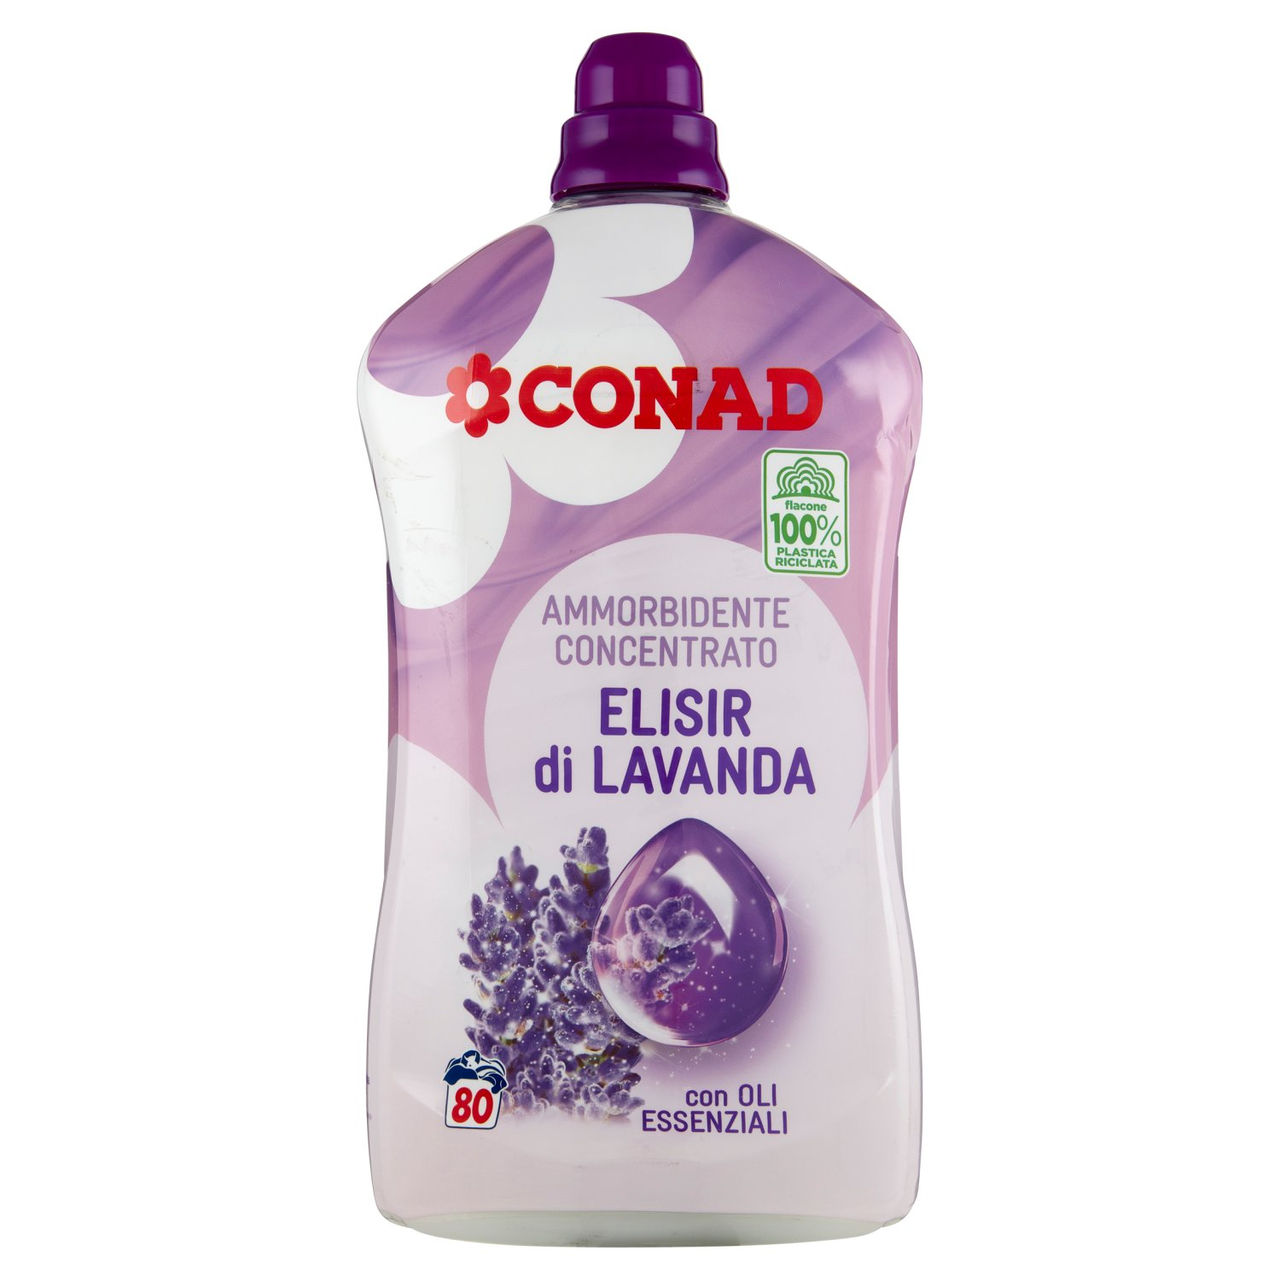 CONAD Ammorbidente Concentrato Elisir di Lavanda 2000 ml